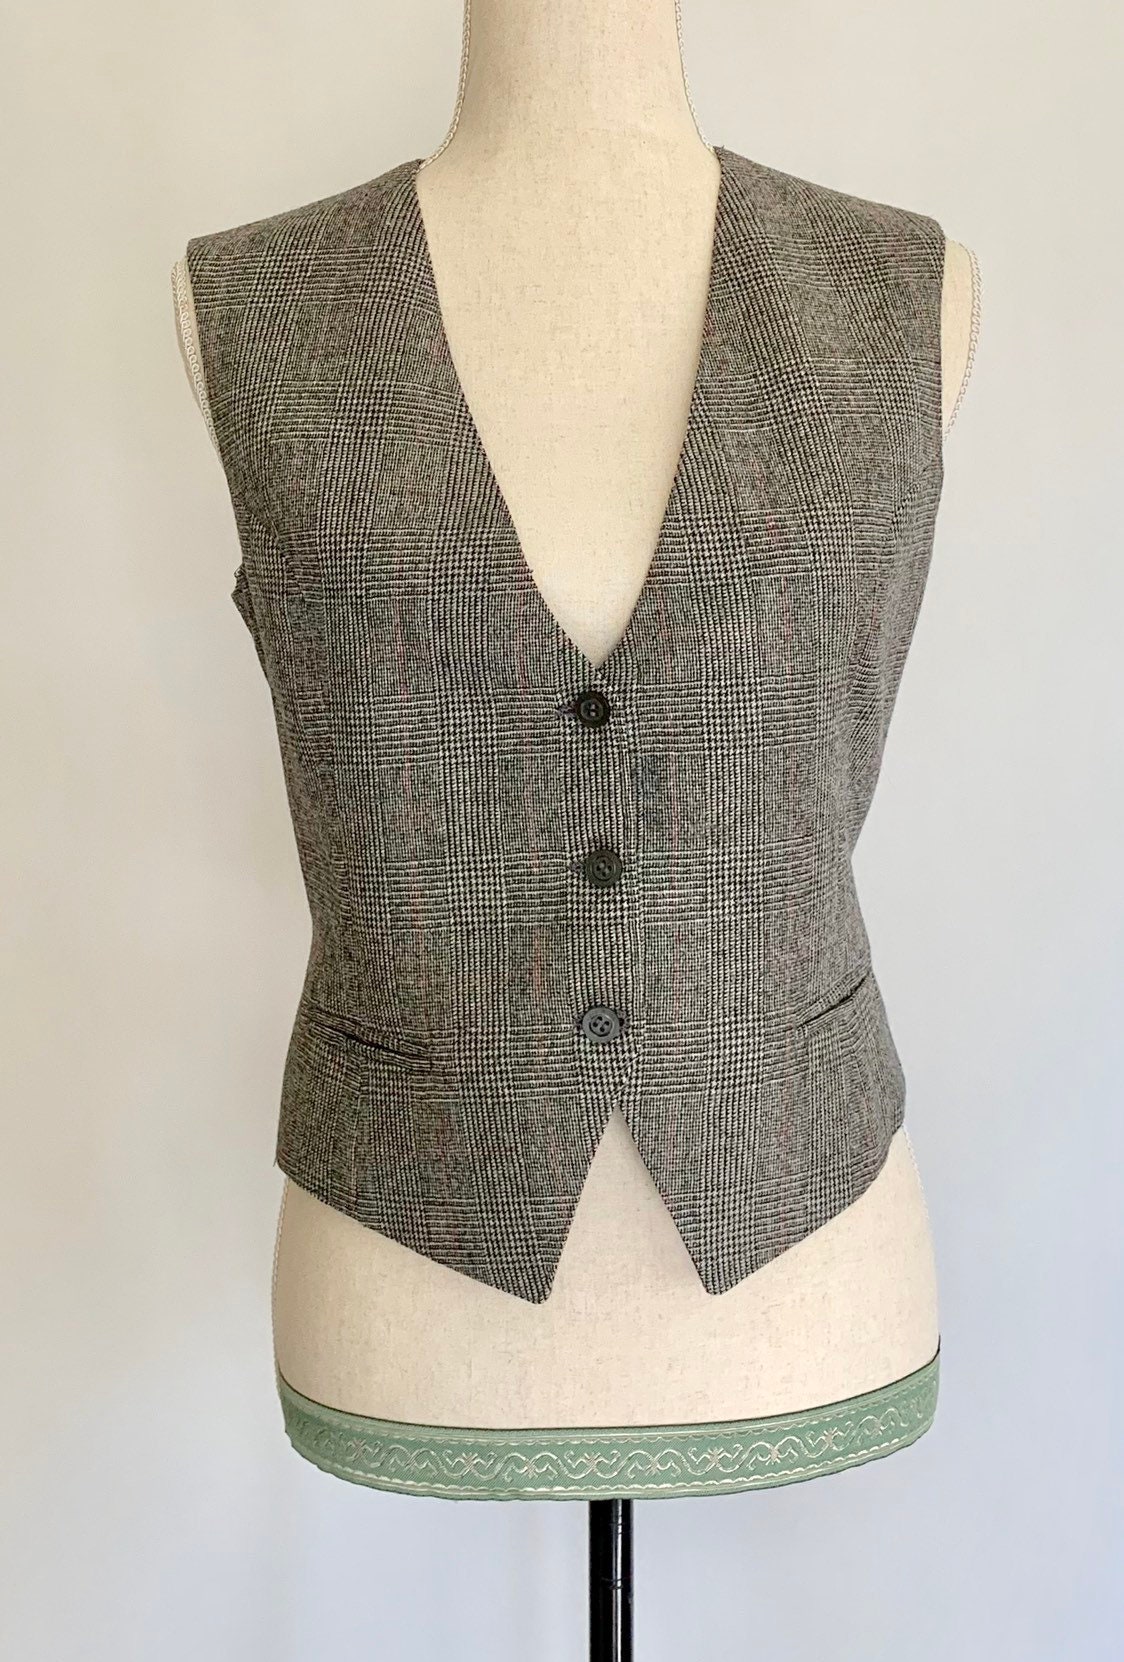 Womens Menswear Style Vest Black Gray White Plaid Vintage Vests Button ...